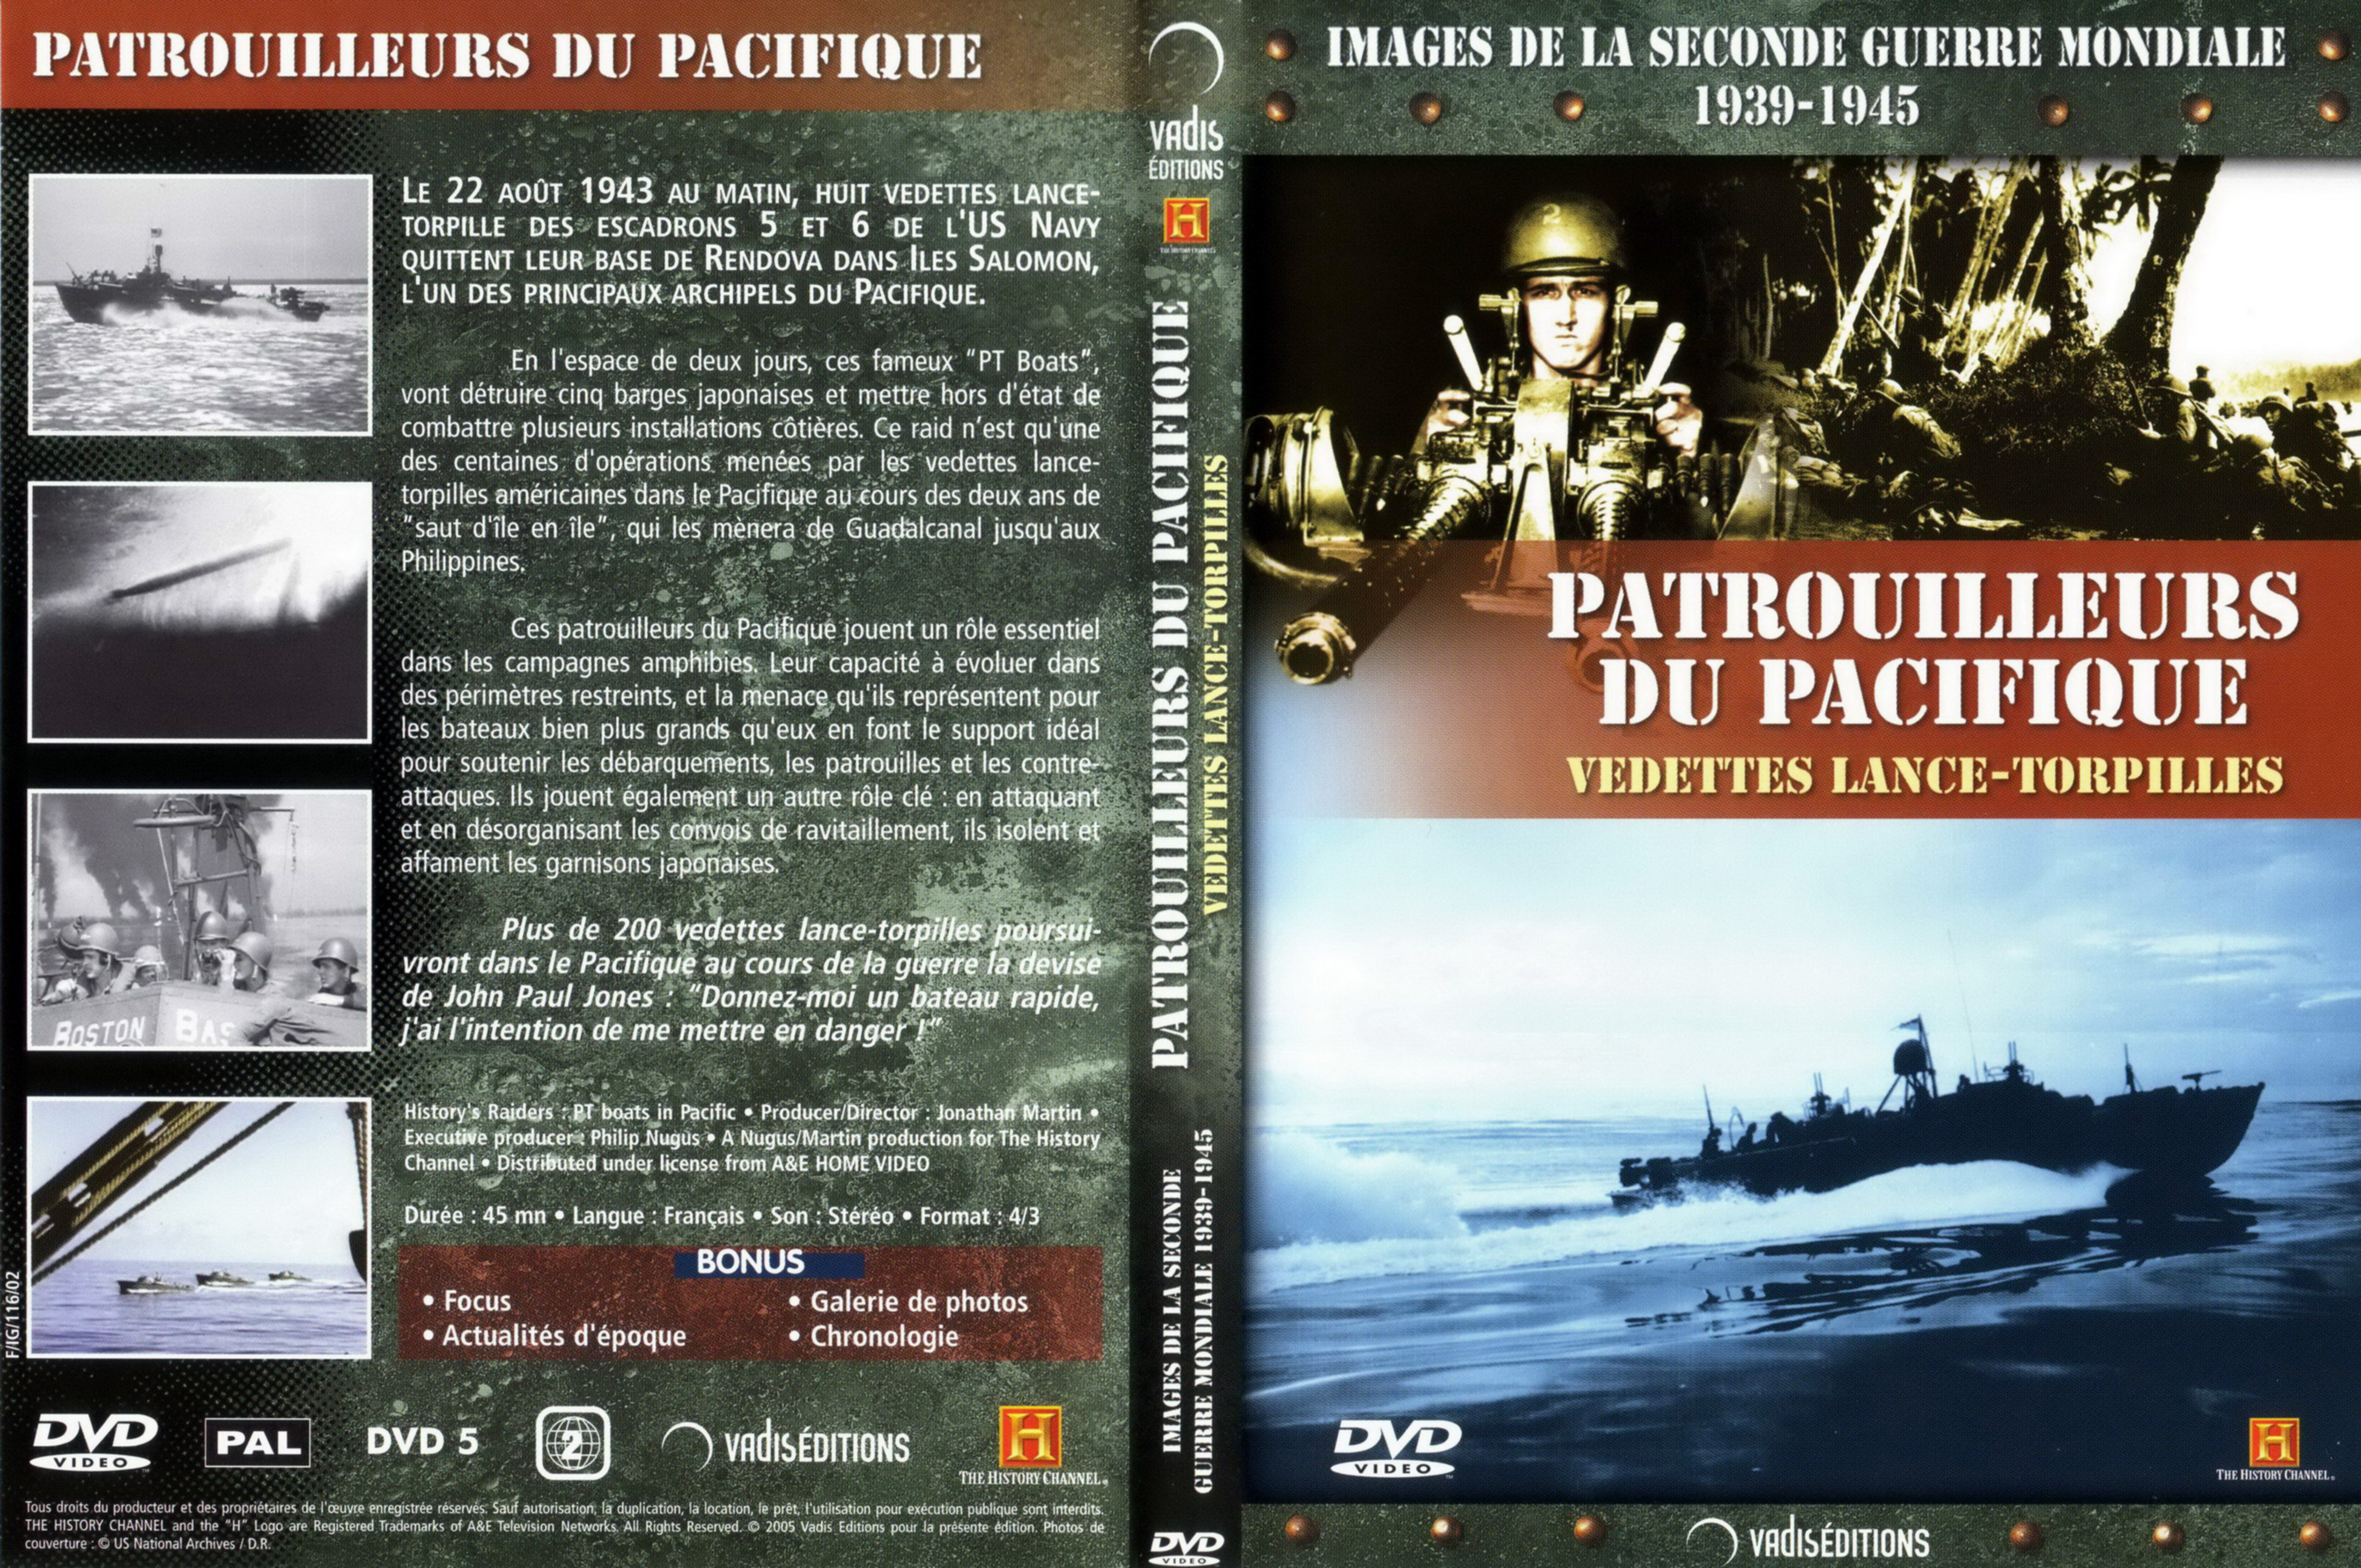 Jaquette DVD Images de la seconde guerre mondiale - Patrouilleurs du pacifique